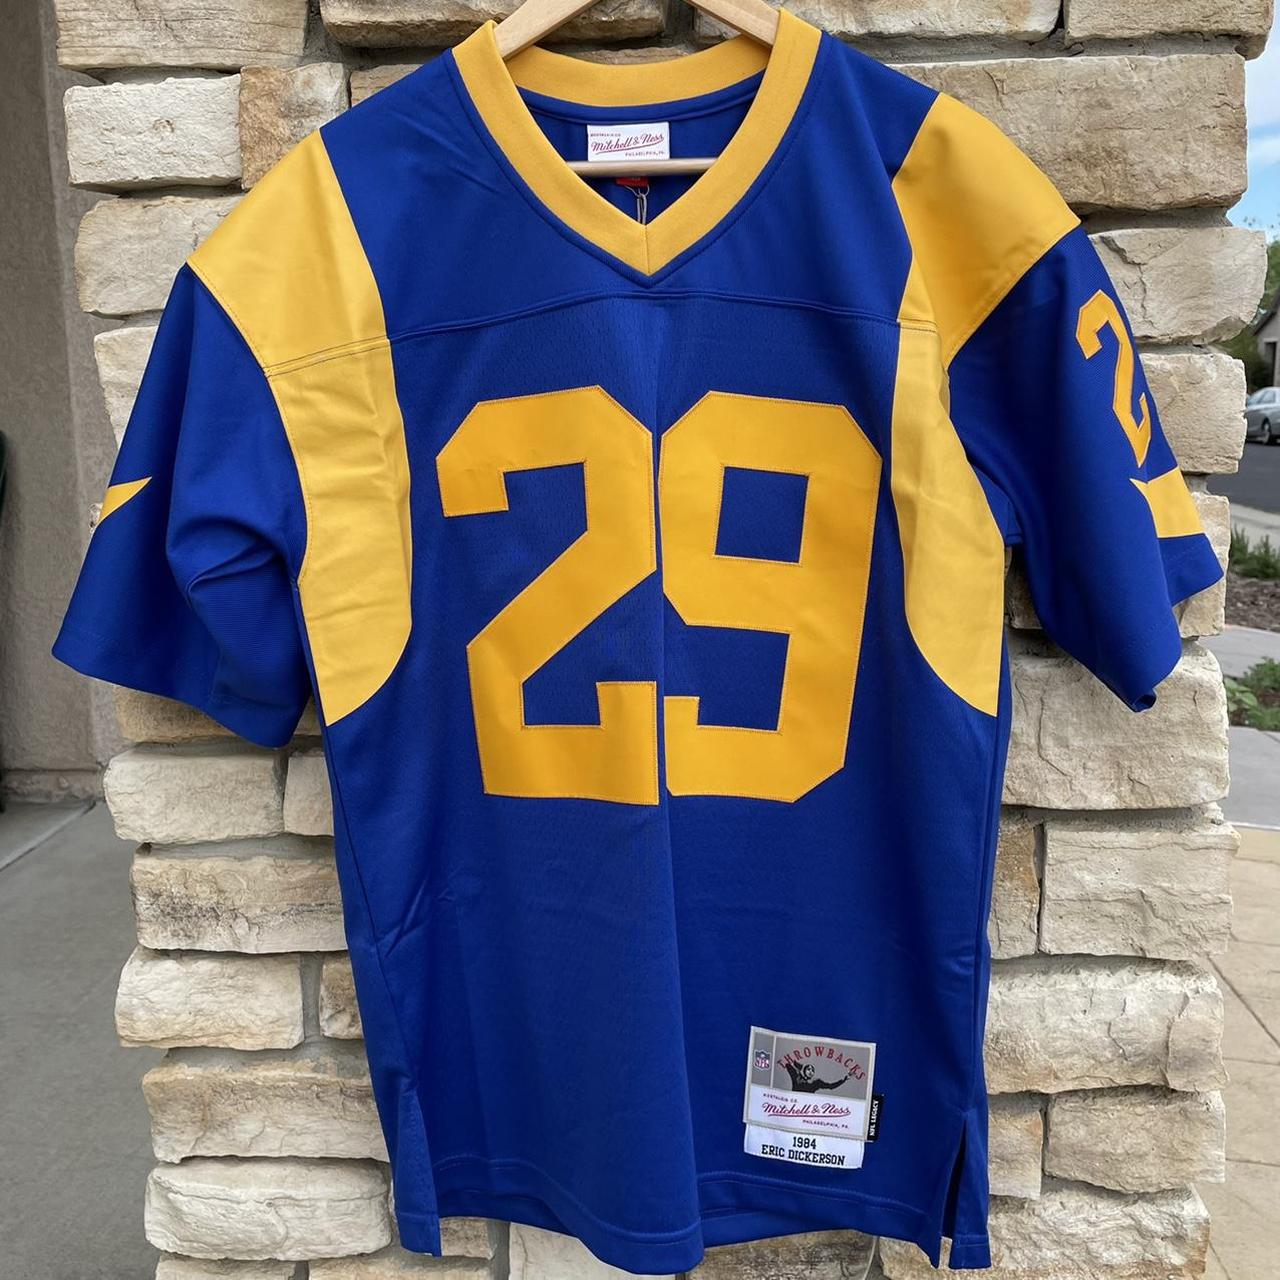 Vintage 1990s St. Louis Rams Nike - Depop